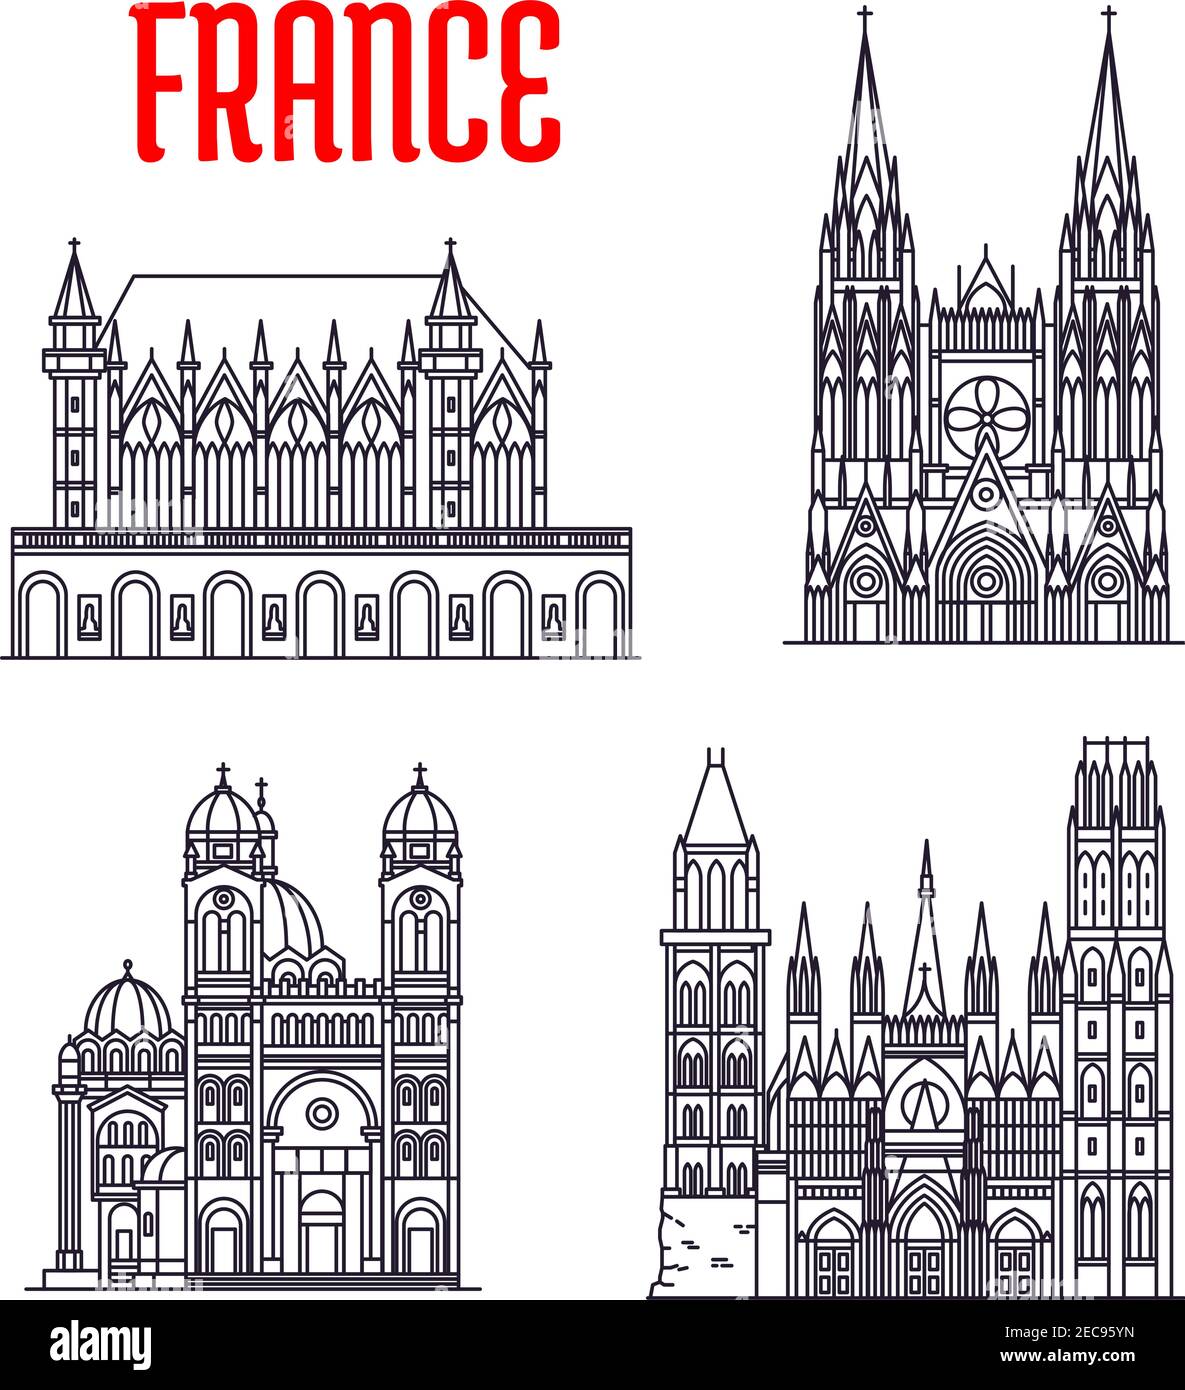 Historische Gebäude von Frankreich. Vektor dünne Linie Ikonen der Kathedrale von Marseille, Rouen Kathedrale, Saint-Ouen Abbey Church, Sainte-Chapelle. Französische Showpl Stock Vektor